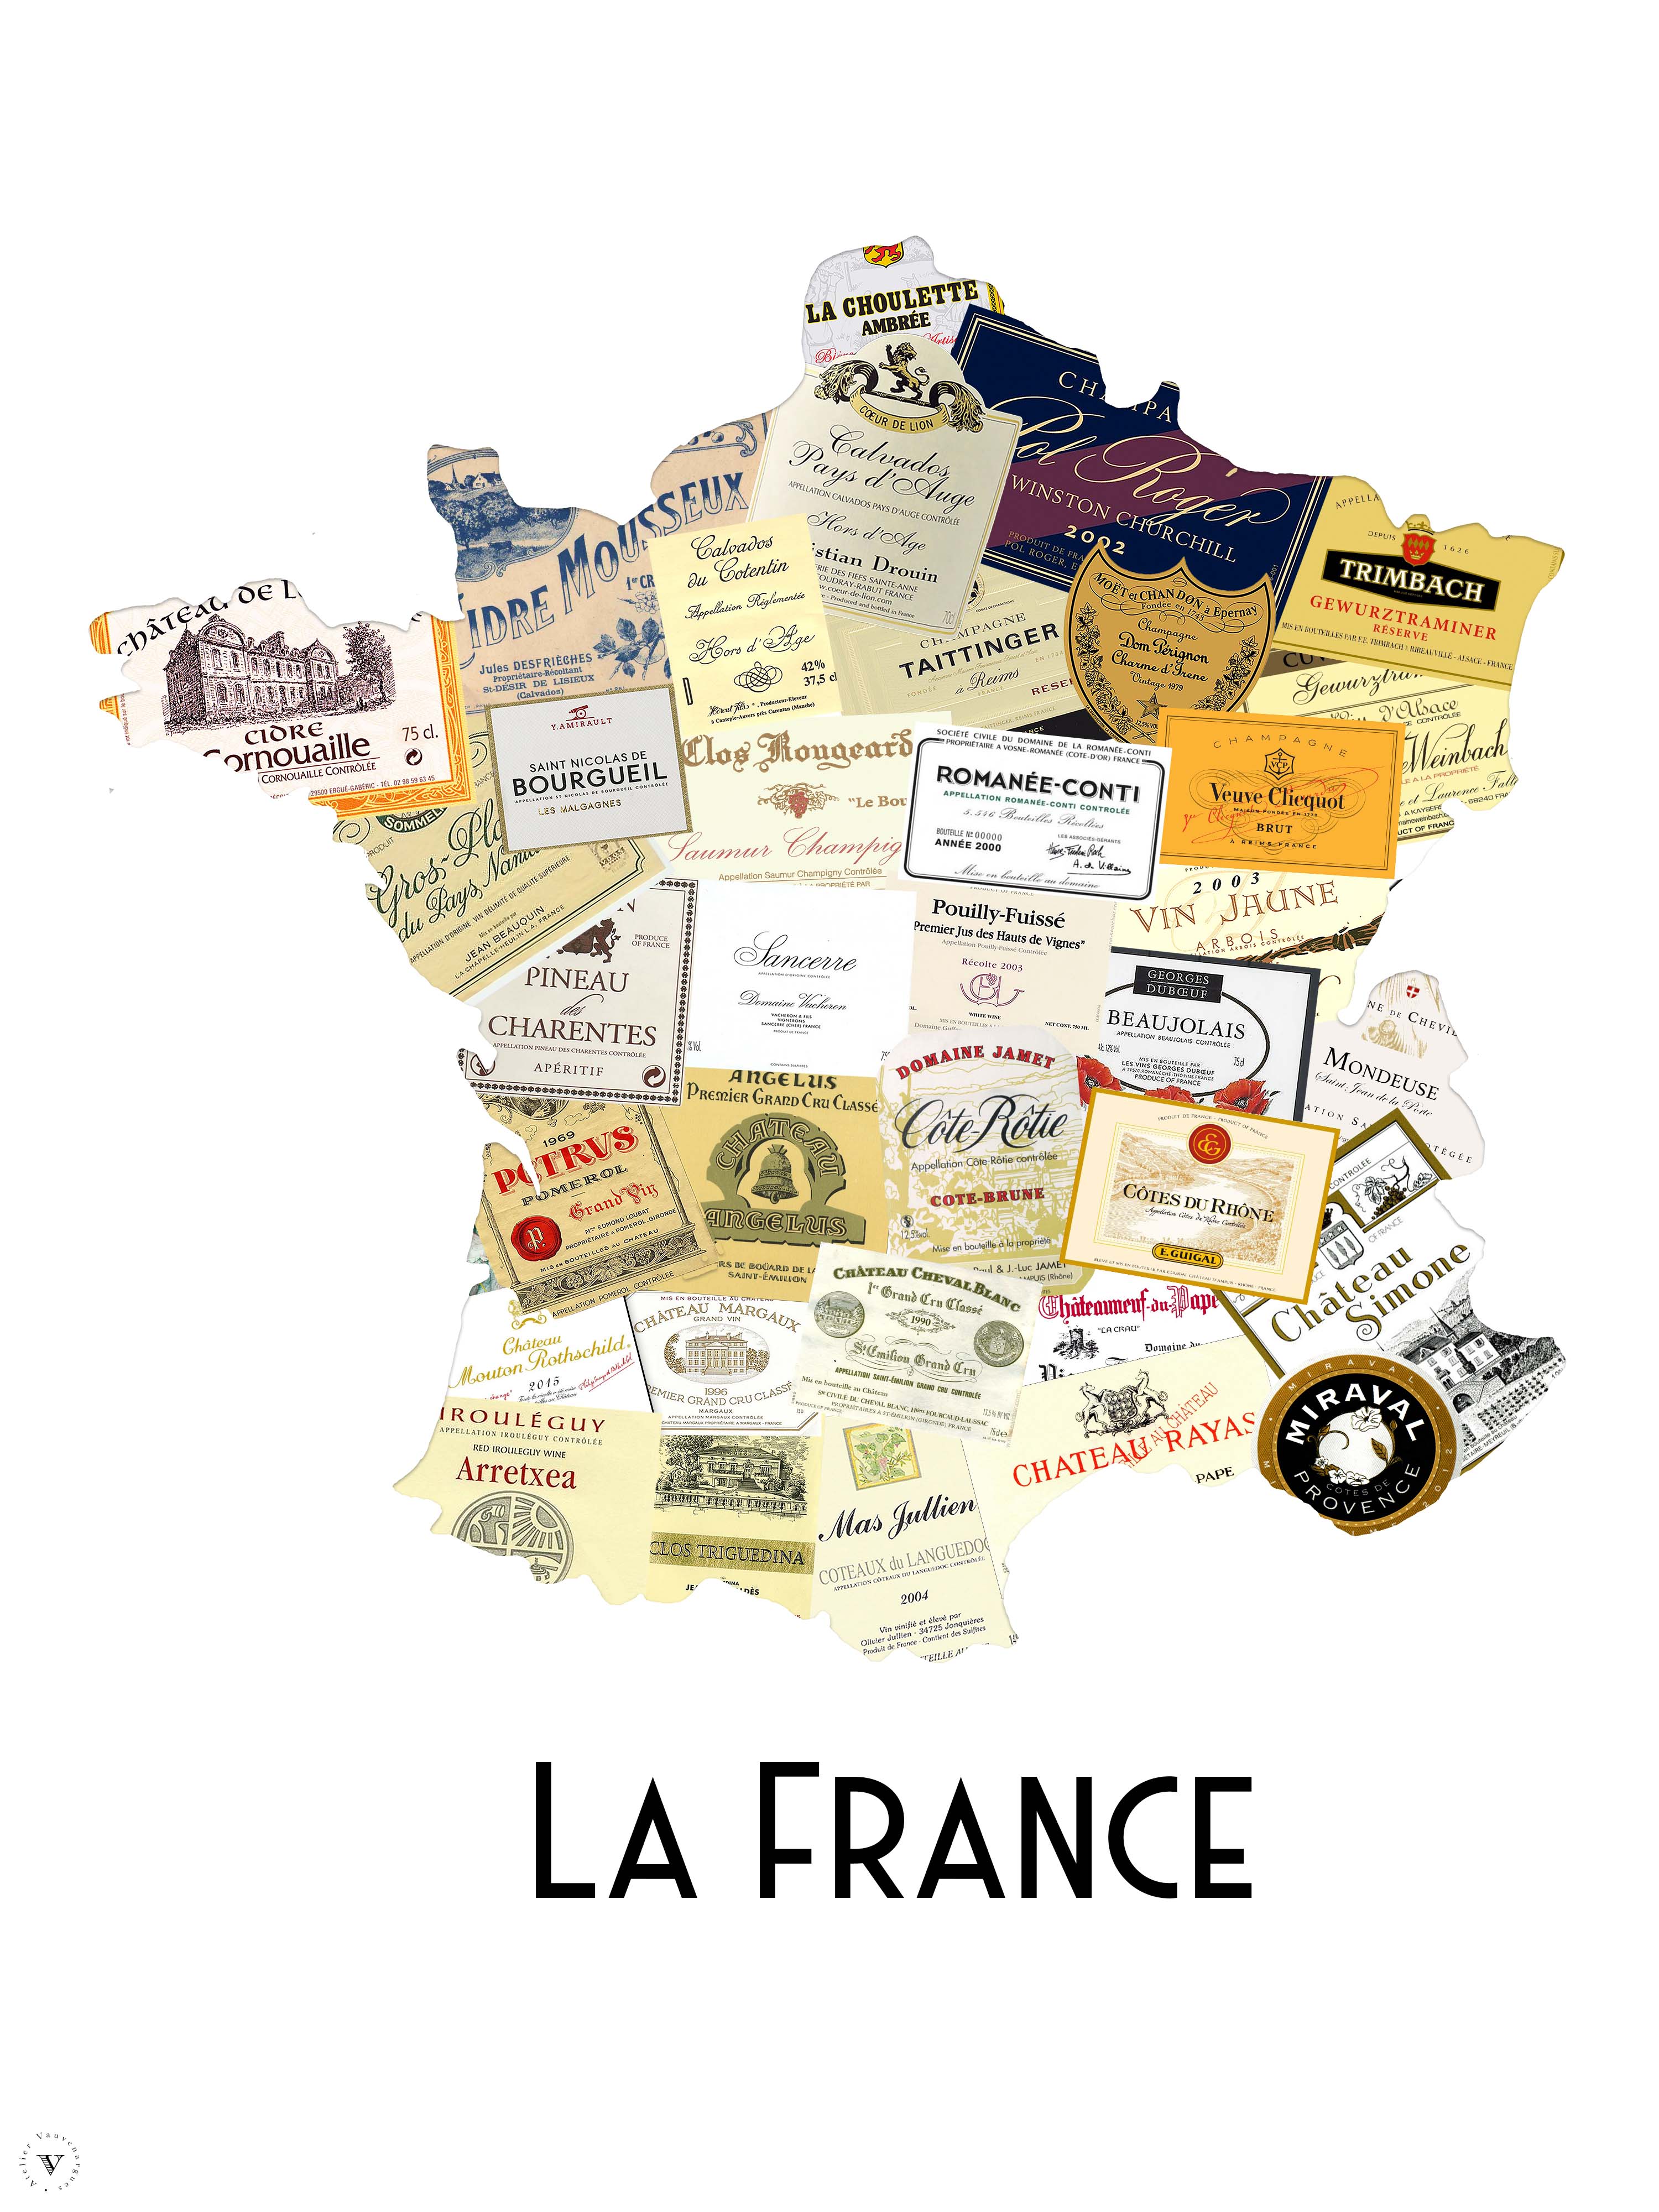 Carte des vins français – Atelier Vauvenargues